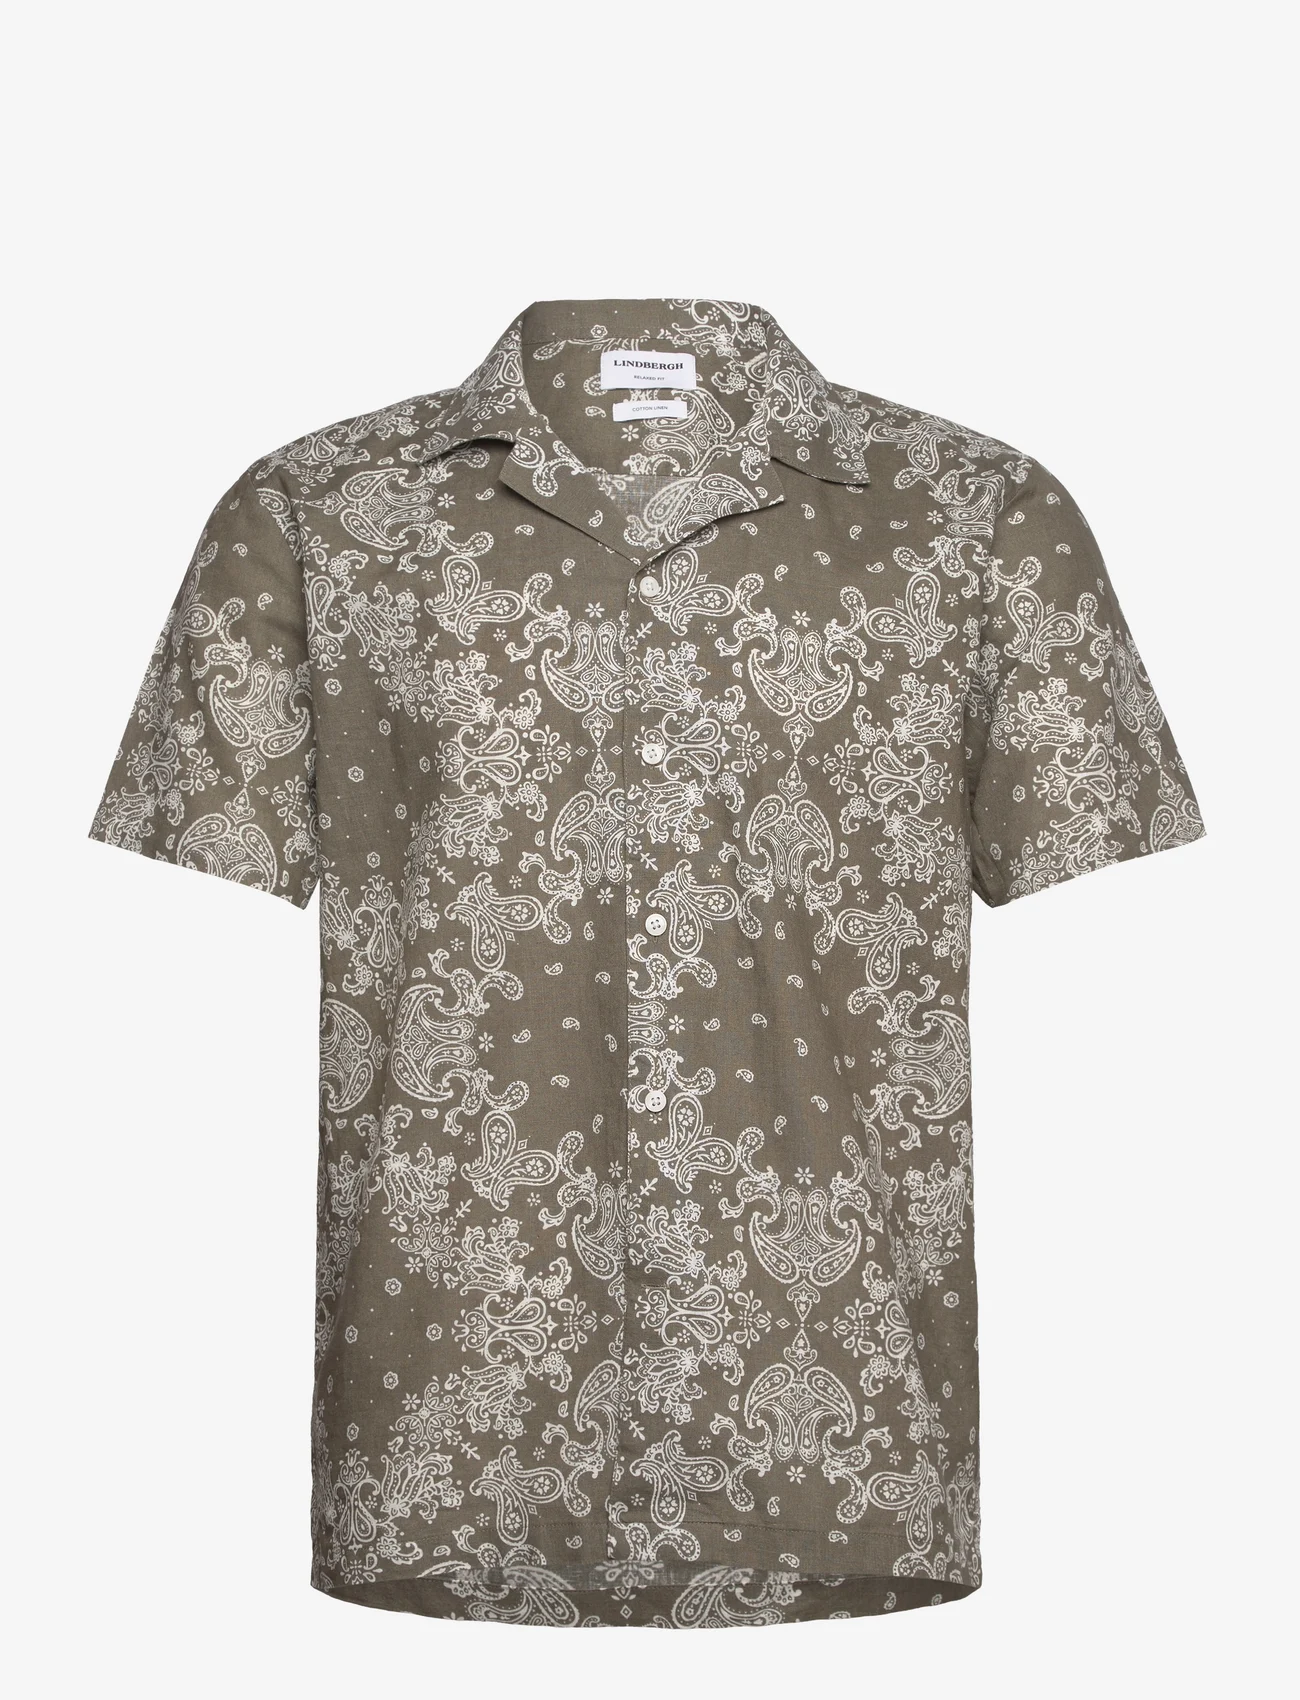 Lindbergh - Paisley AOP shirt S/S - kortärmade skjortor - lt army - 0